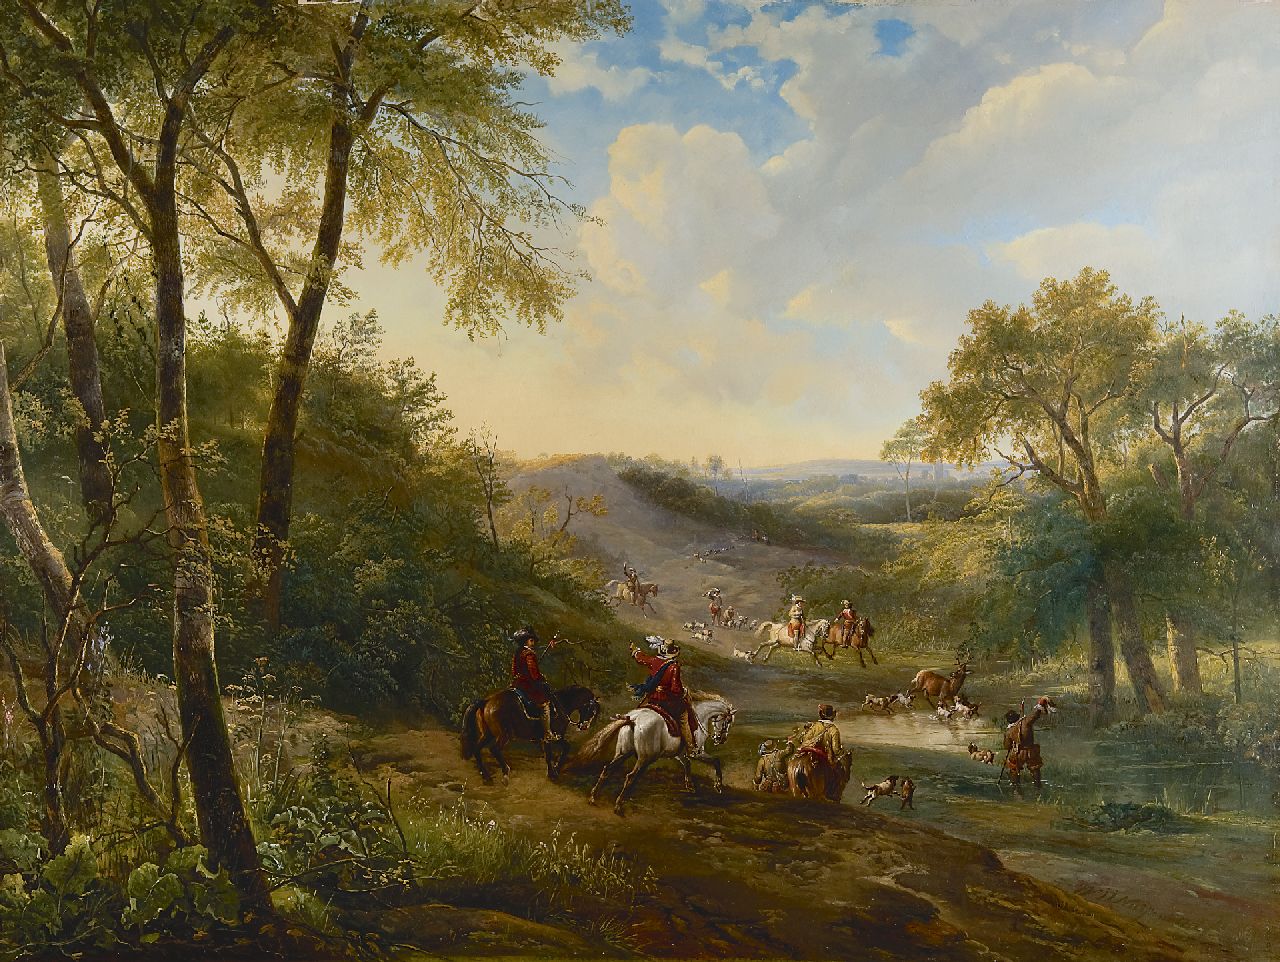 Nuijen W.J.J.  | Wijnandus Johannes Josephus 'Wijnand' Nuijen, A deer hunt in a valley, oil on panel 66.5 x 88.5 cm, signed l.r.